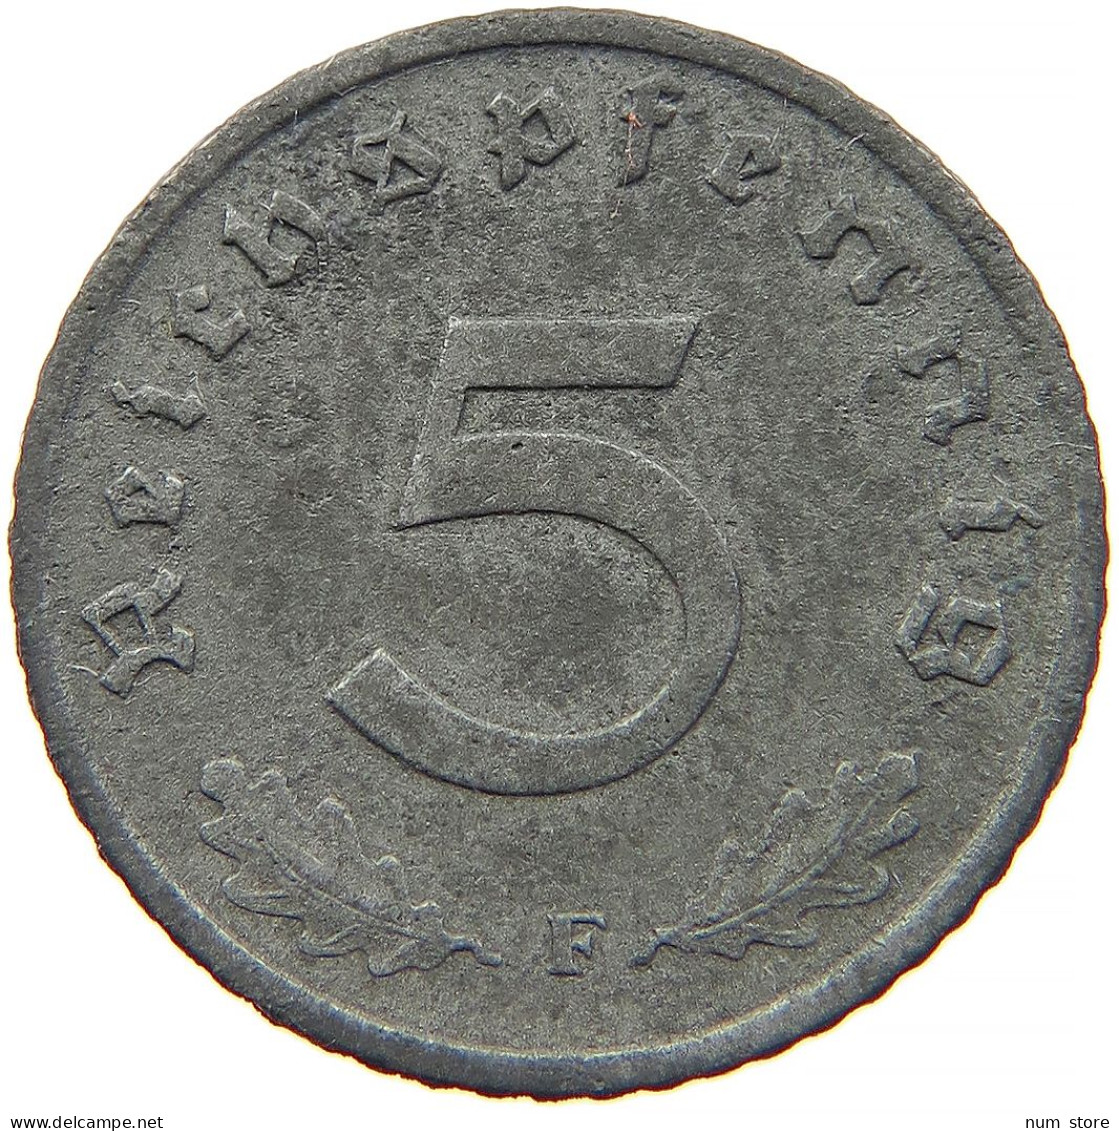 GERMANY 5 REICHSPFENNIG 1941 F #s091 0831 - 5 Reichspfennig